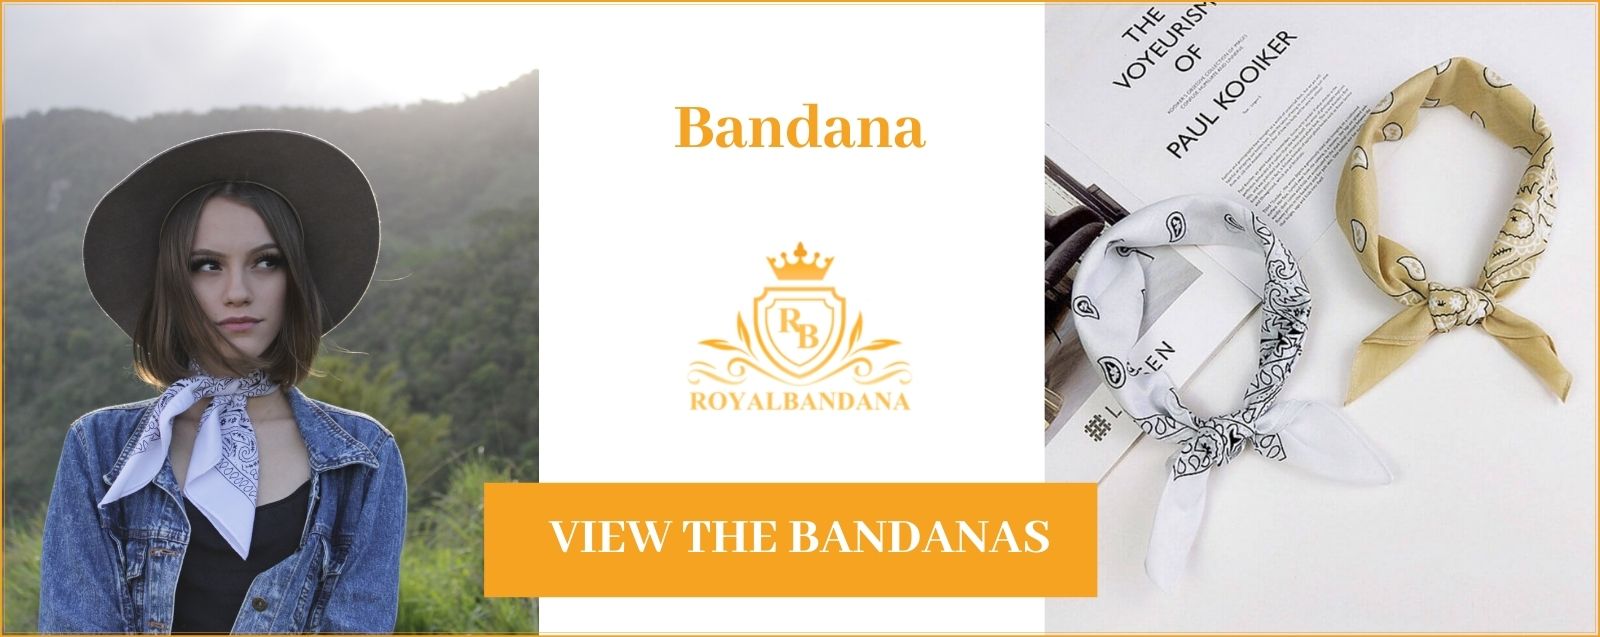 see-bandanas-royalbandana